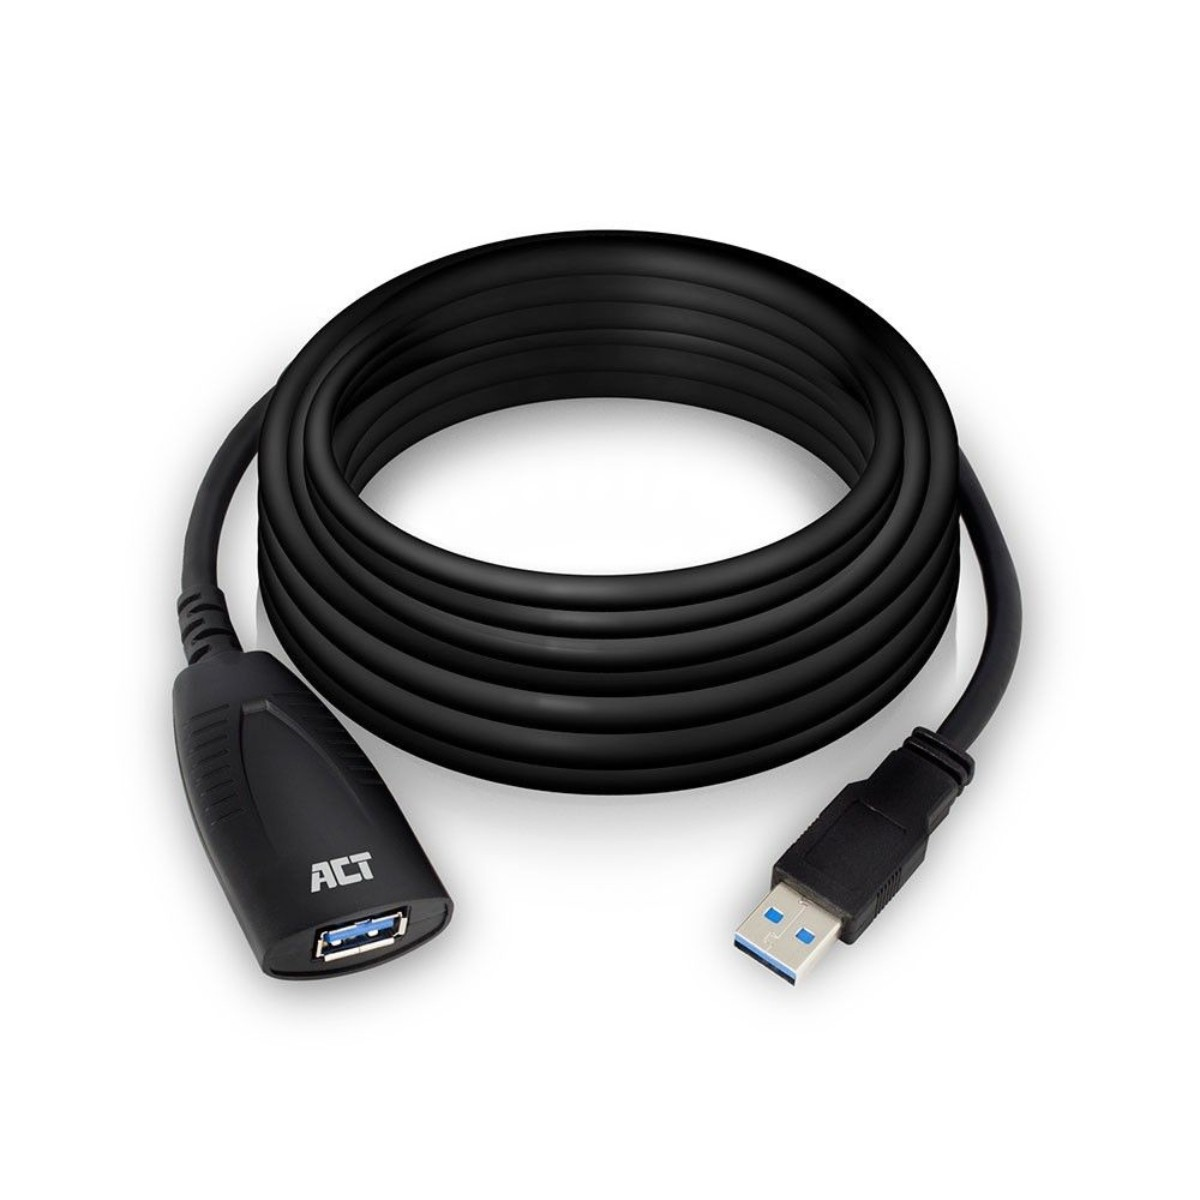 AC6105 USB Kabel ACT